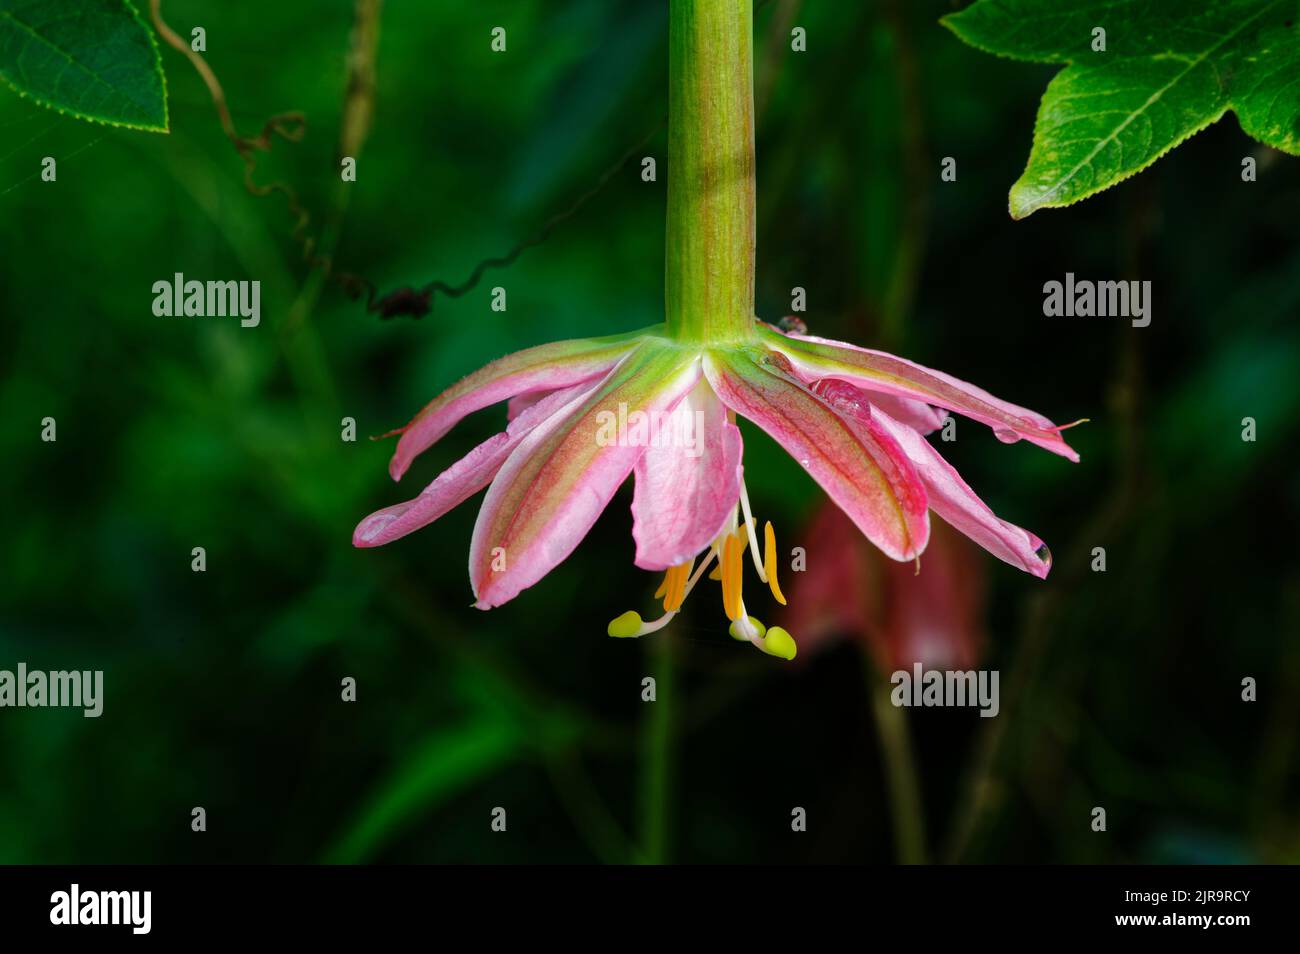 Eine Bananenblütenpflanze hängt mit ihren schönen rosa Blütenblättern und leuchtend orangefarbenen und grünen Staubgefäßen herab. Stockfoto